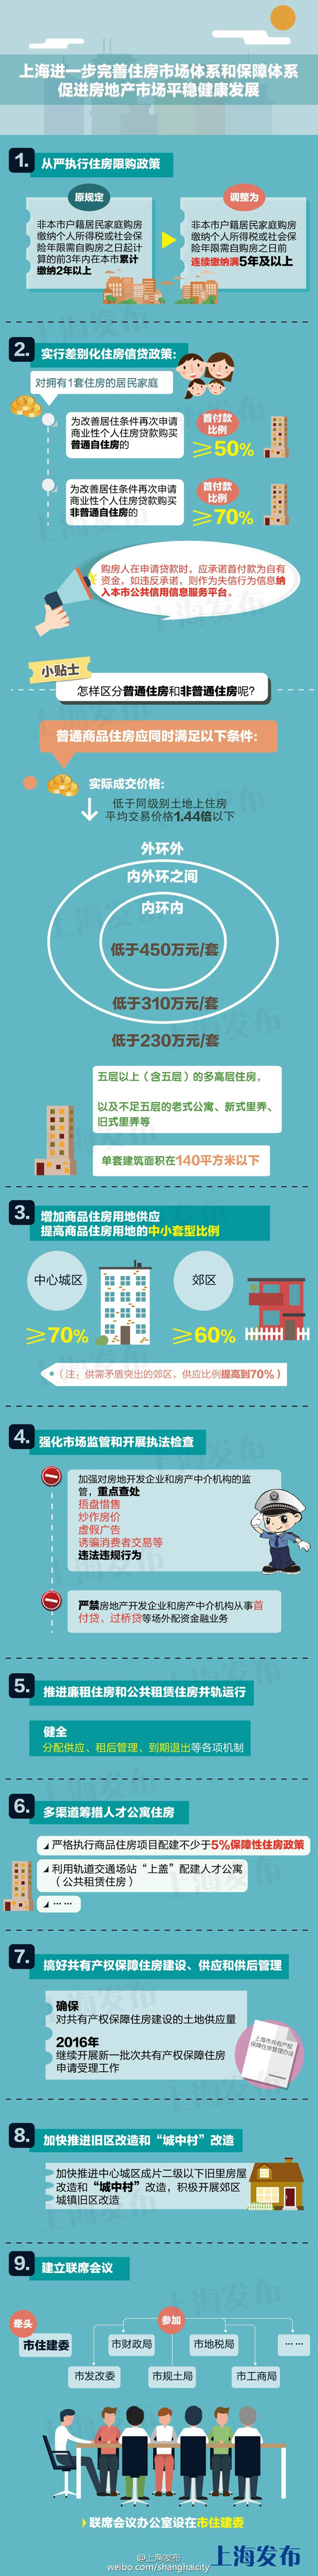 上海楼市新政:户籍限购2改5 二套房首付提高